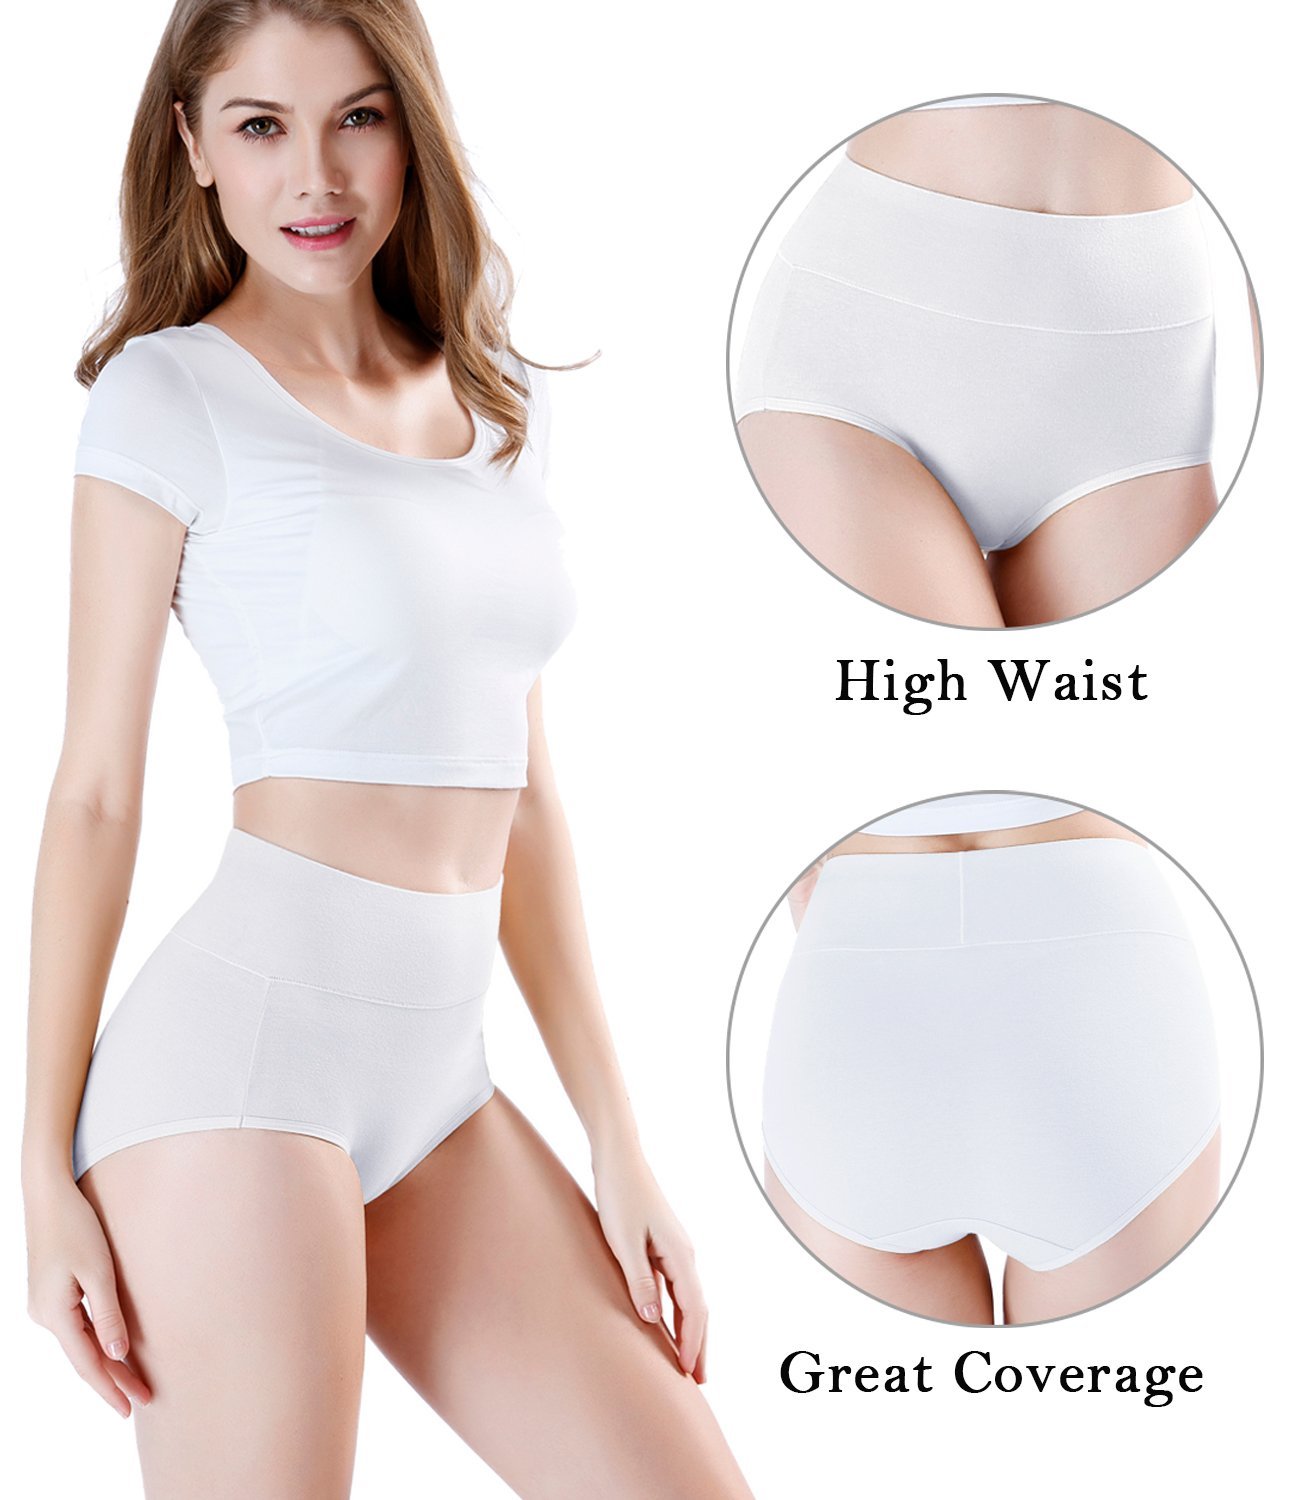 wirarpa Women's High Waist Full Coverage Cotton Underwear 4 Pack